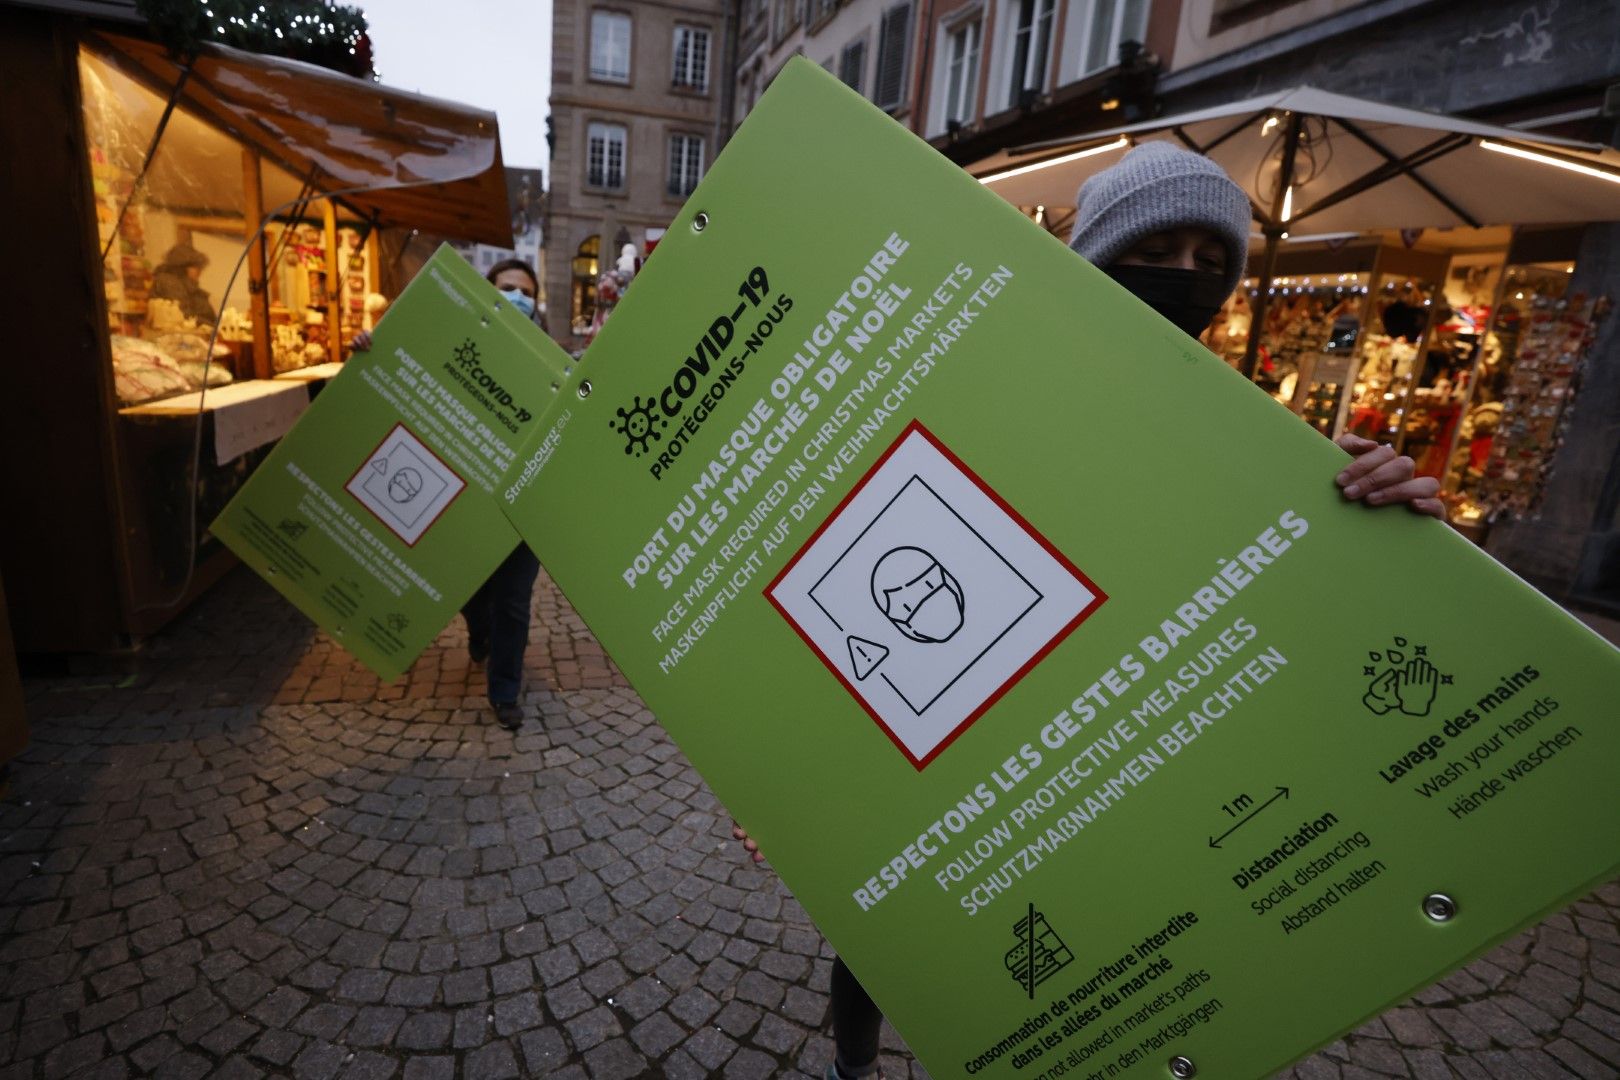 Ковид предупреждение за необходимите мерки про влизане в коледен базар в Страсбург